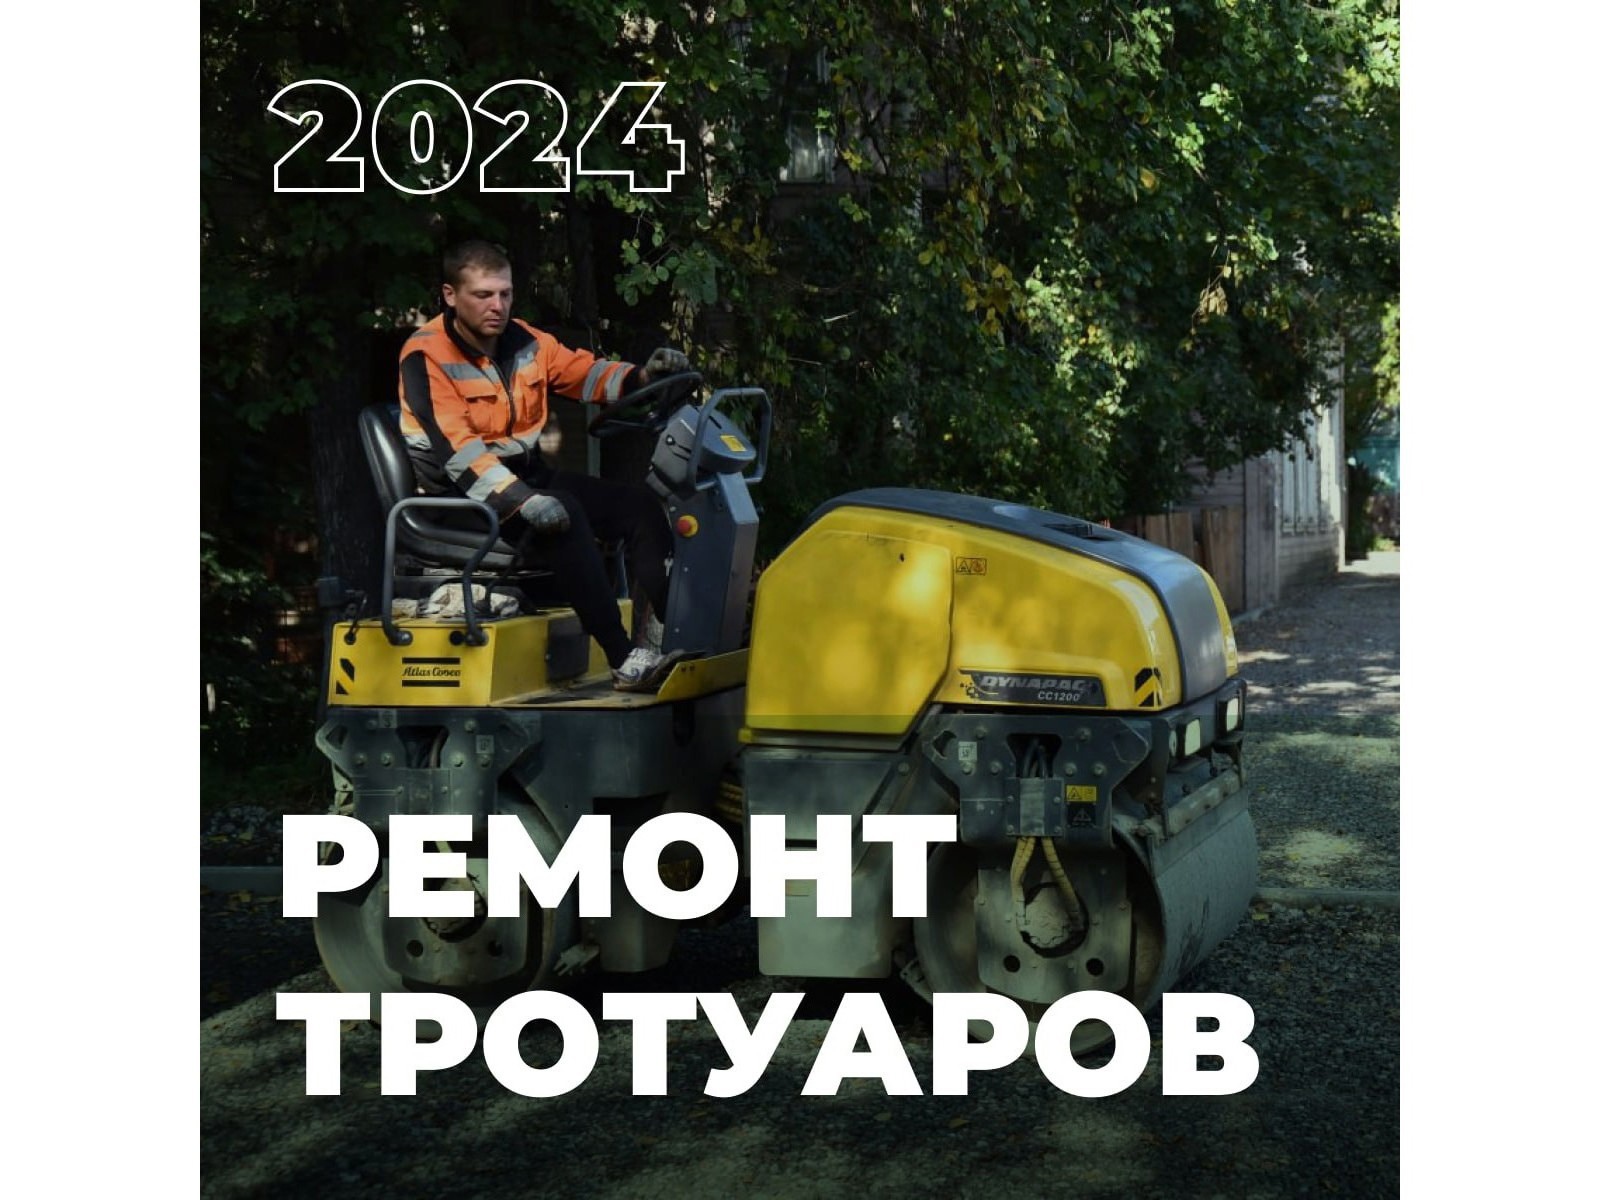 38 участков тротуаров будут отремонтированы в Вологде в 2024 году.